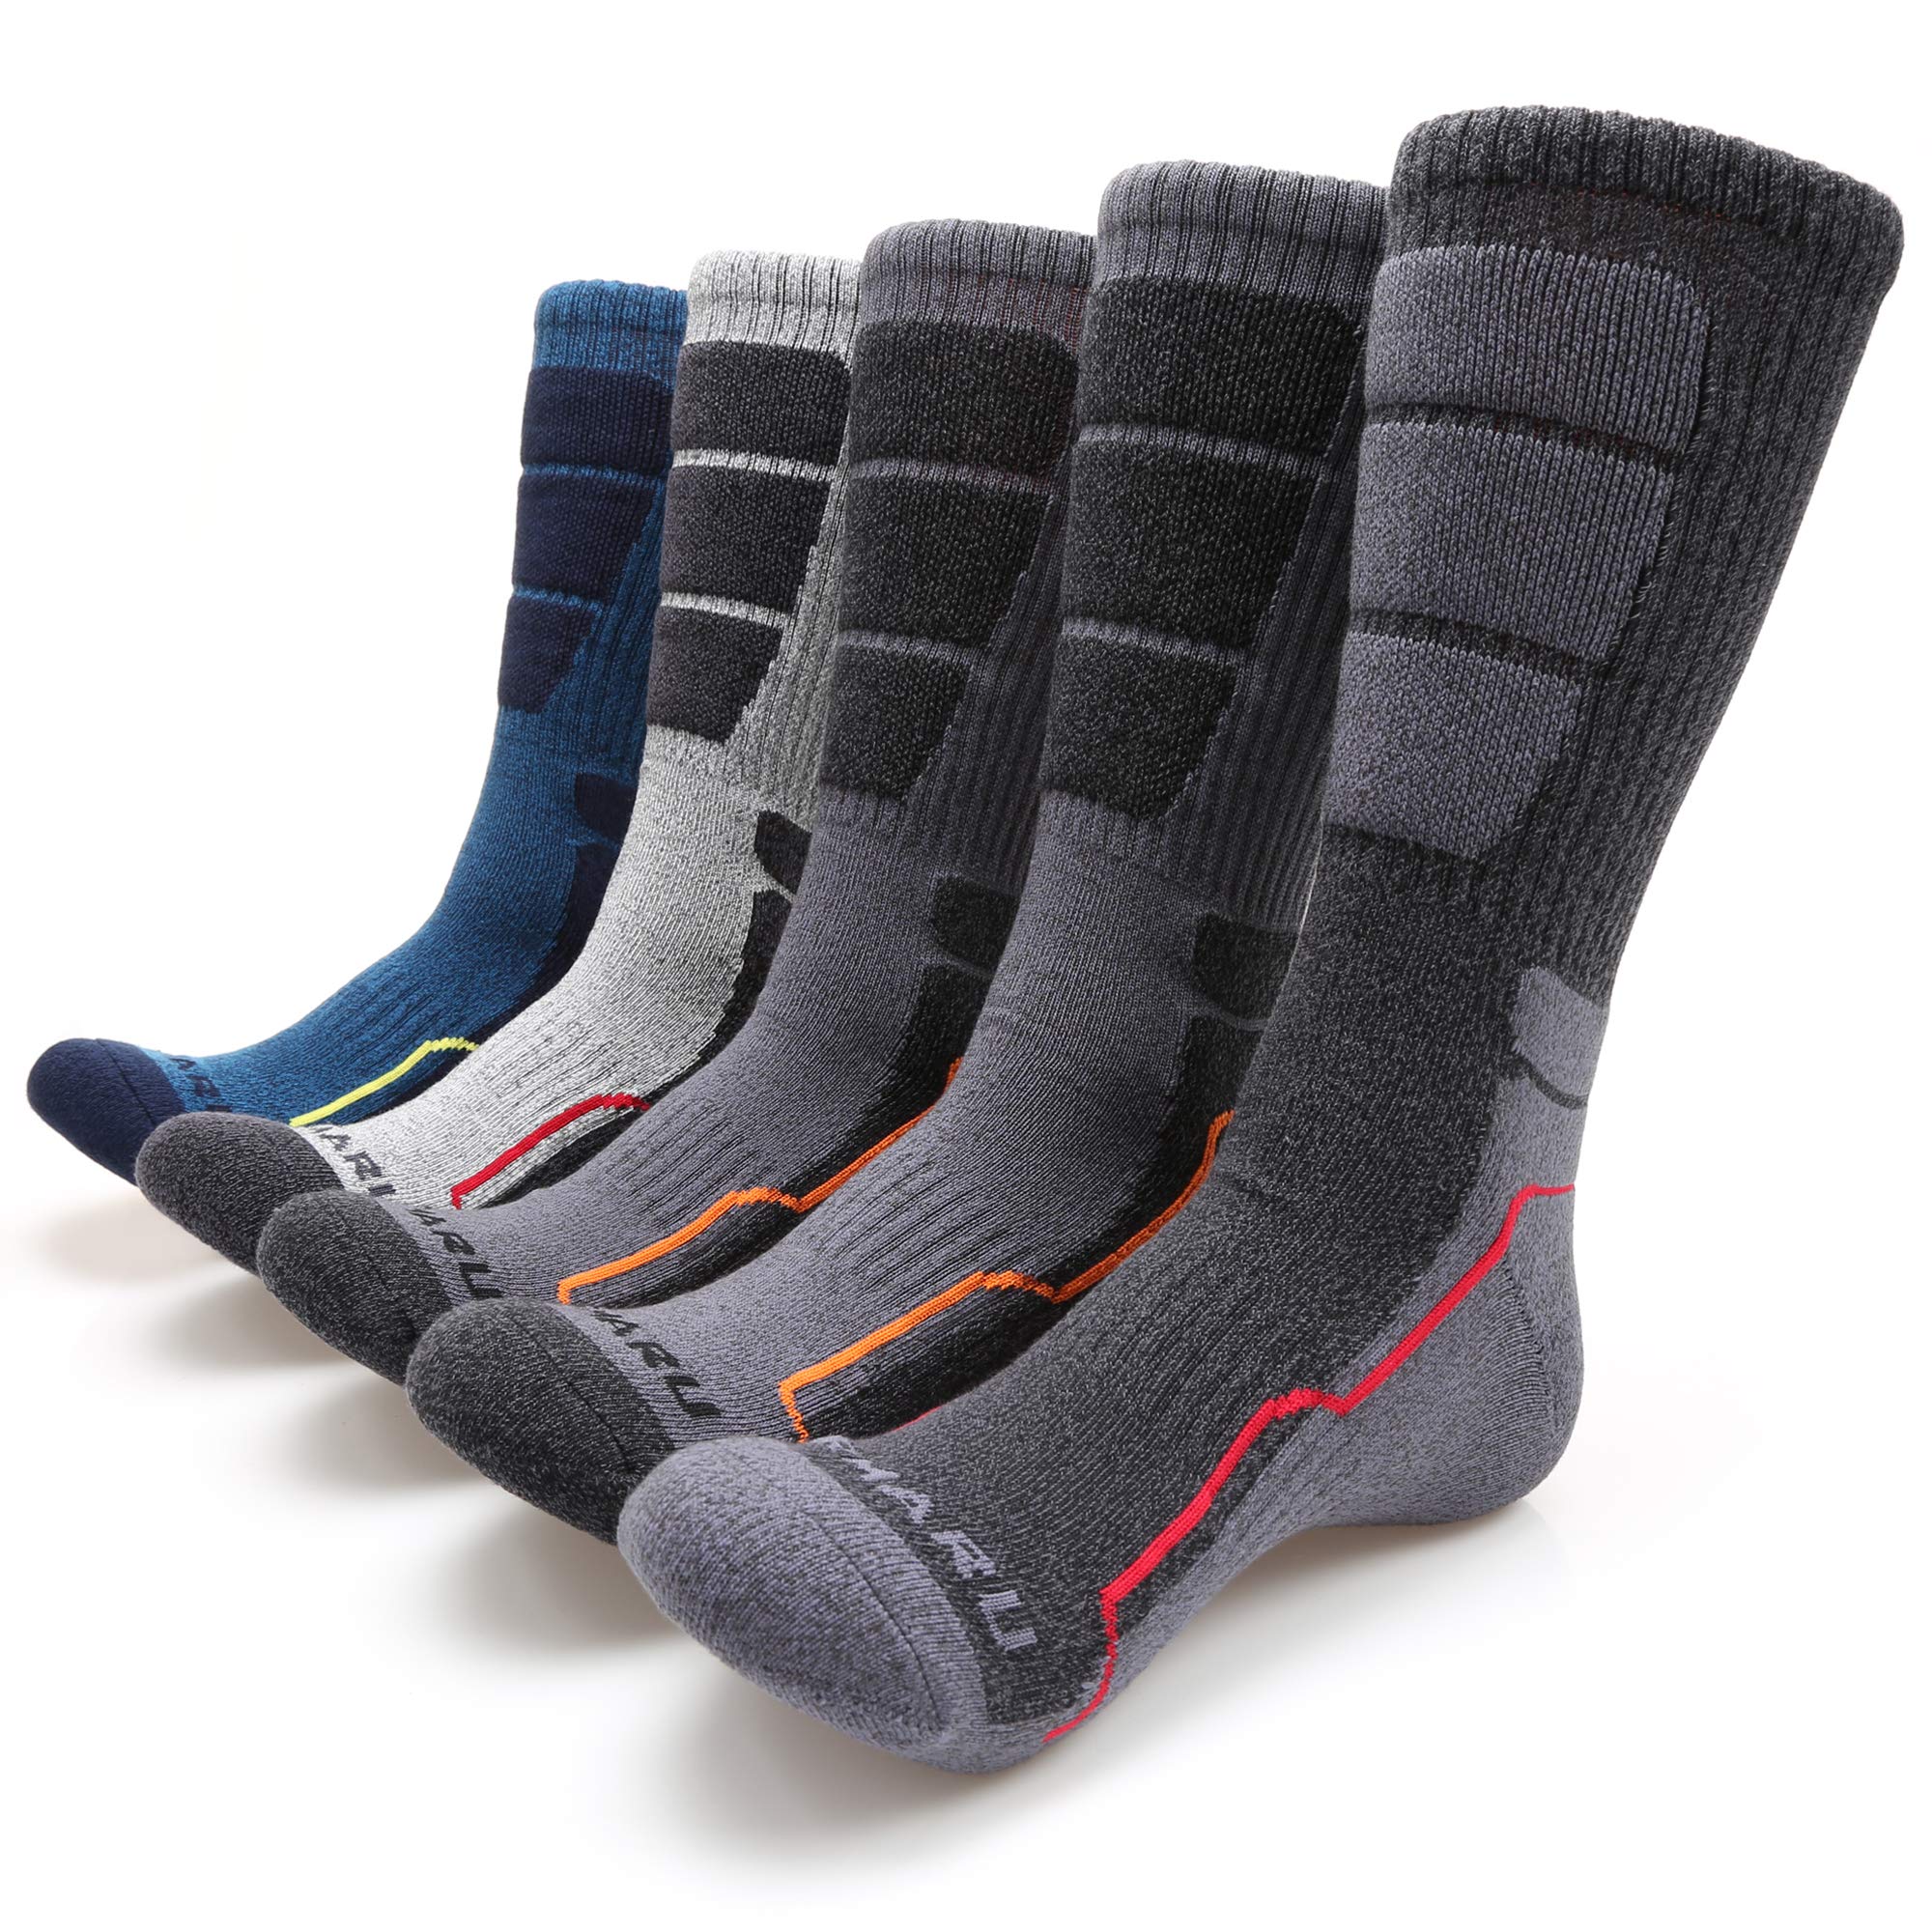 MIRMARU 5 pares de calcetines acolchados para hombre, para senderismo, correr, senderismo, absorción de humedad, 5 pares